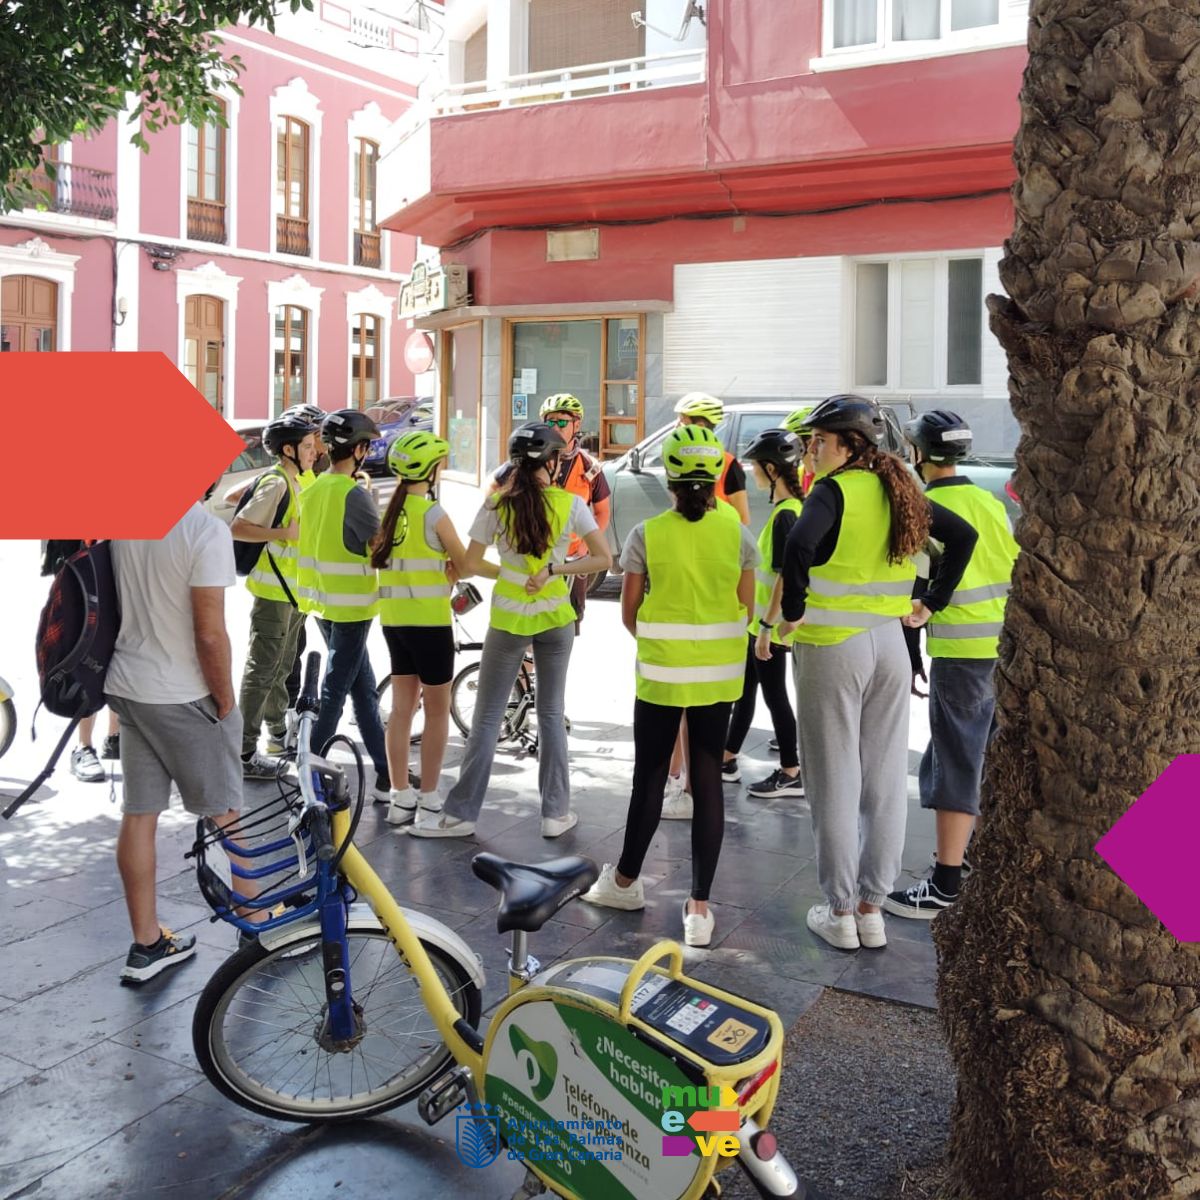 𝗠𝗲𝗷𝗼𝗿 𝗲𝗻 𝗕𝗶𝗰𝗶 🚲🎒 Desarrollamos, con la colaboración de la ONG “Mejor en Bici”, talleres de circulación en bicicleta por las calles de nuestra ciudad. Participan jóvenes de secundaria de varios centros, esta vez le tocó el turno al alumnado del IES Pérez Galdós.